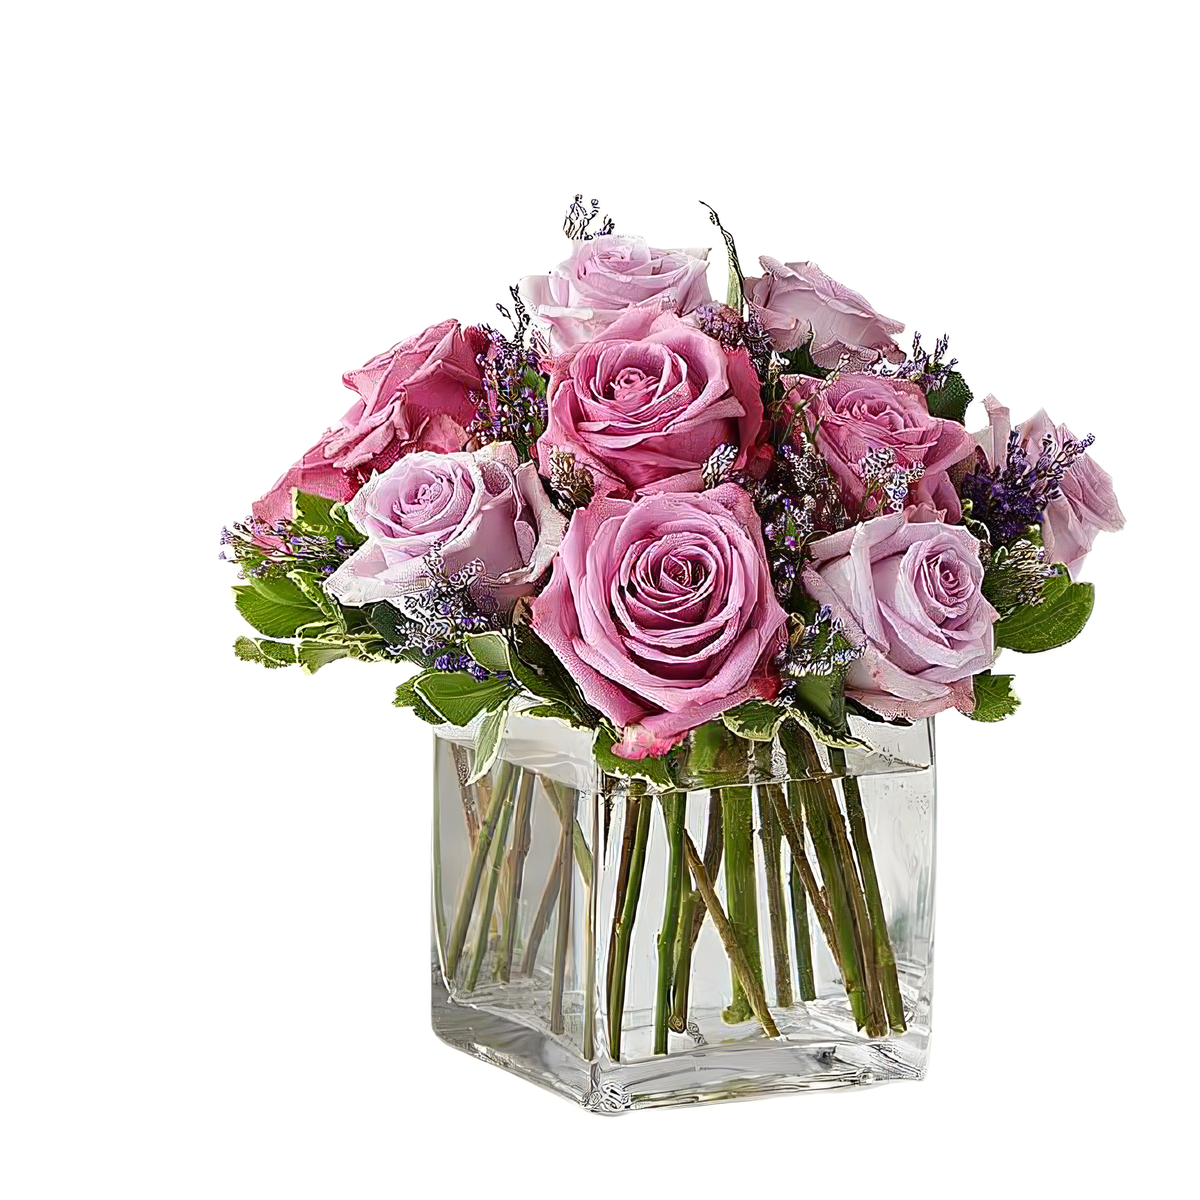 Graceful Lavender Bouquet - Roses